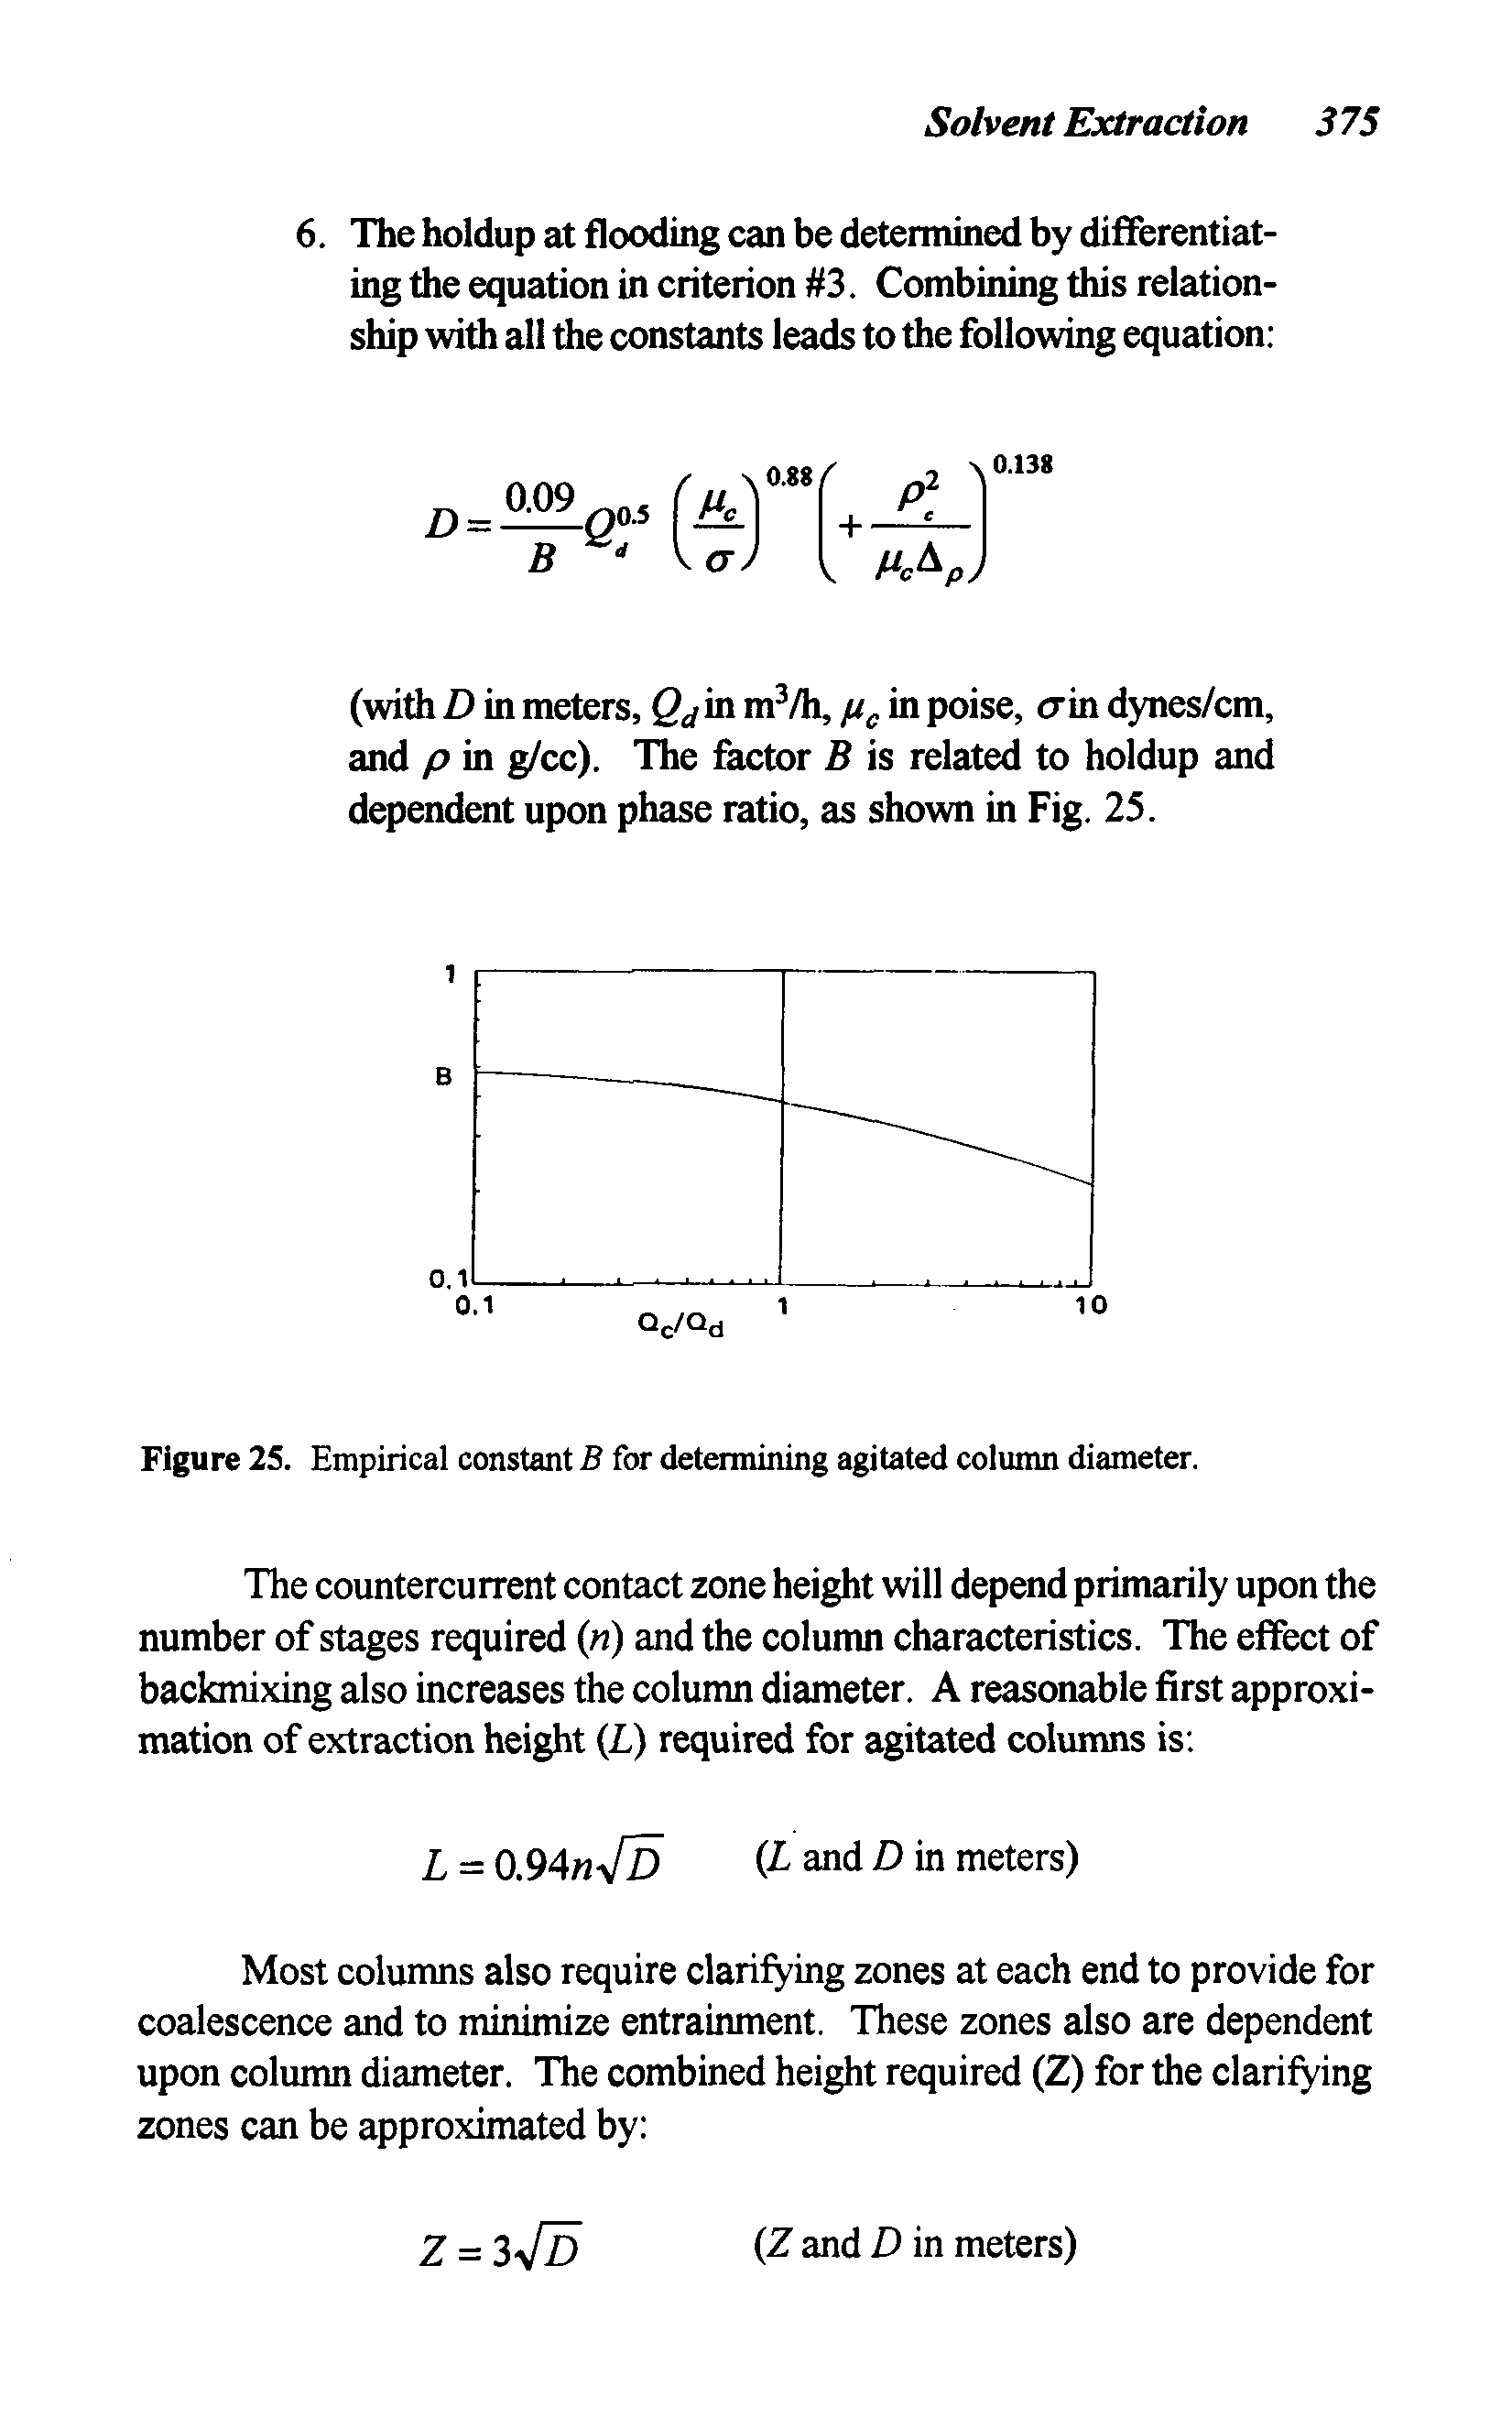 Figure 25. Empirical constant B for determining agitated column diameter.